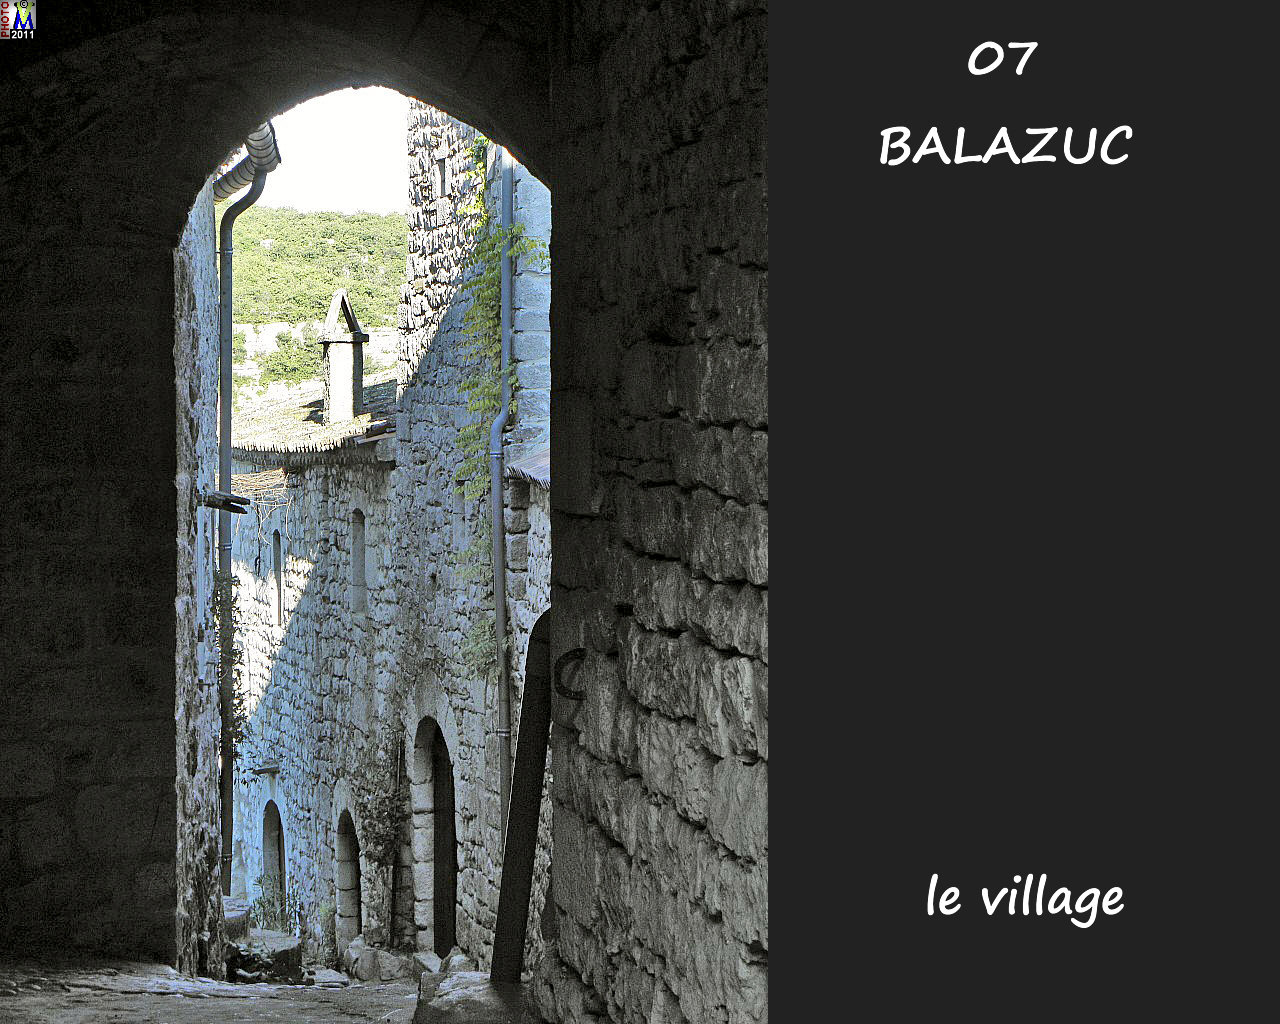 07BALAZUC_village_168.jpg